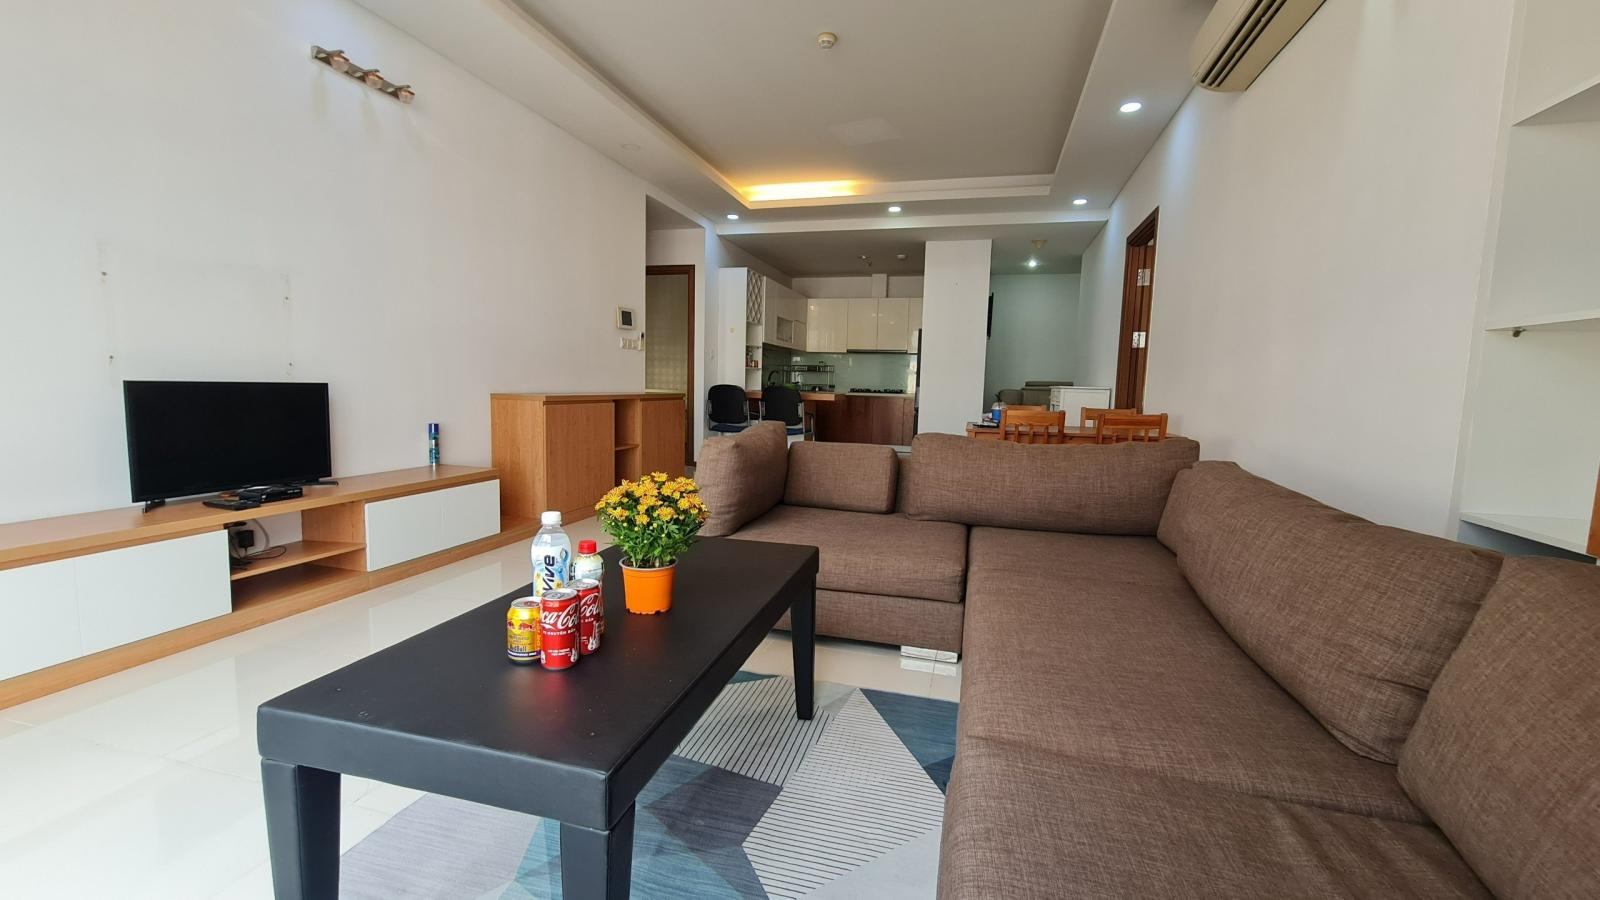 Cho thuê rẻ căn hộ Thảo Điền Pearl 3 phòng ngủ full nội thất trung tâm Q2 TP.HCM 13981915